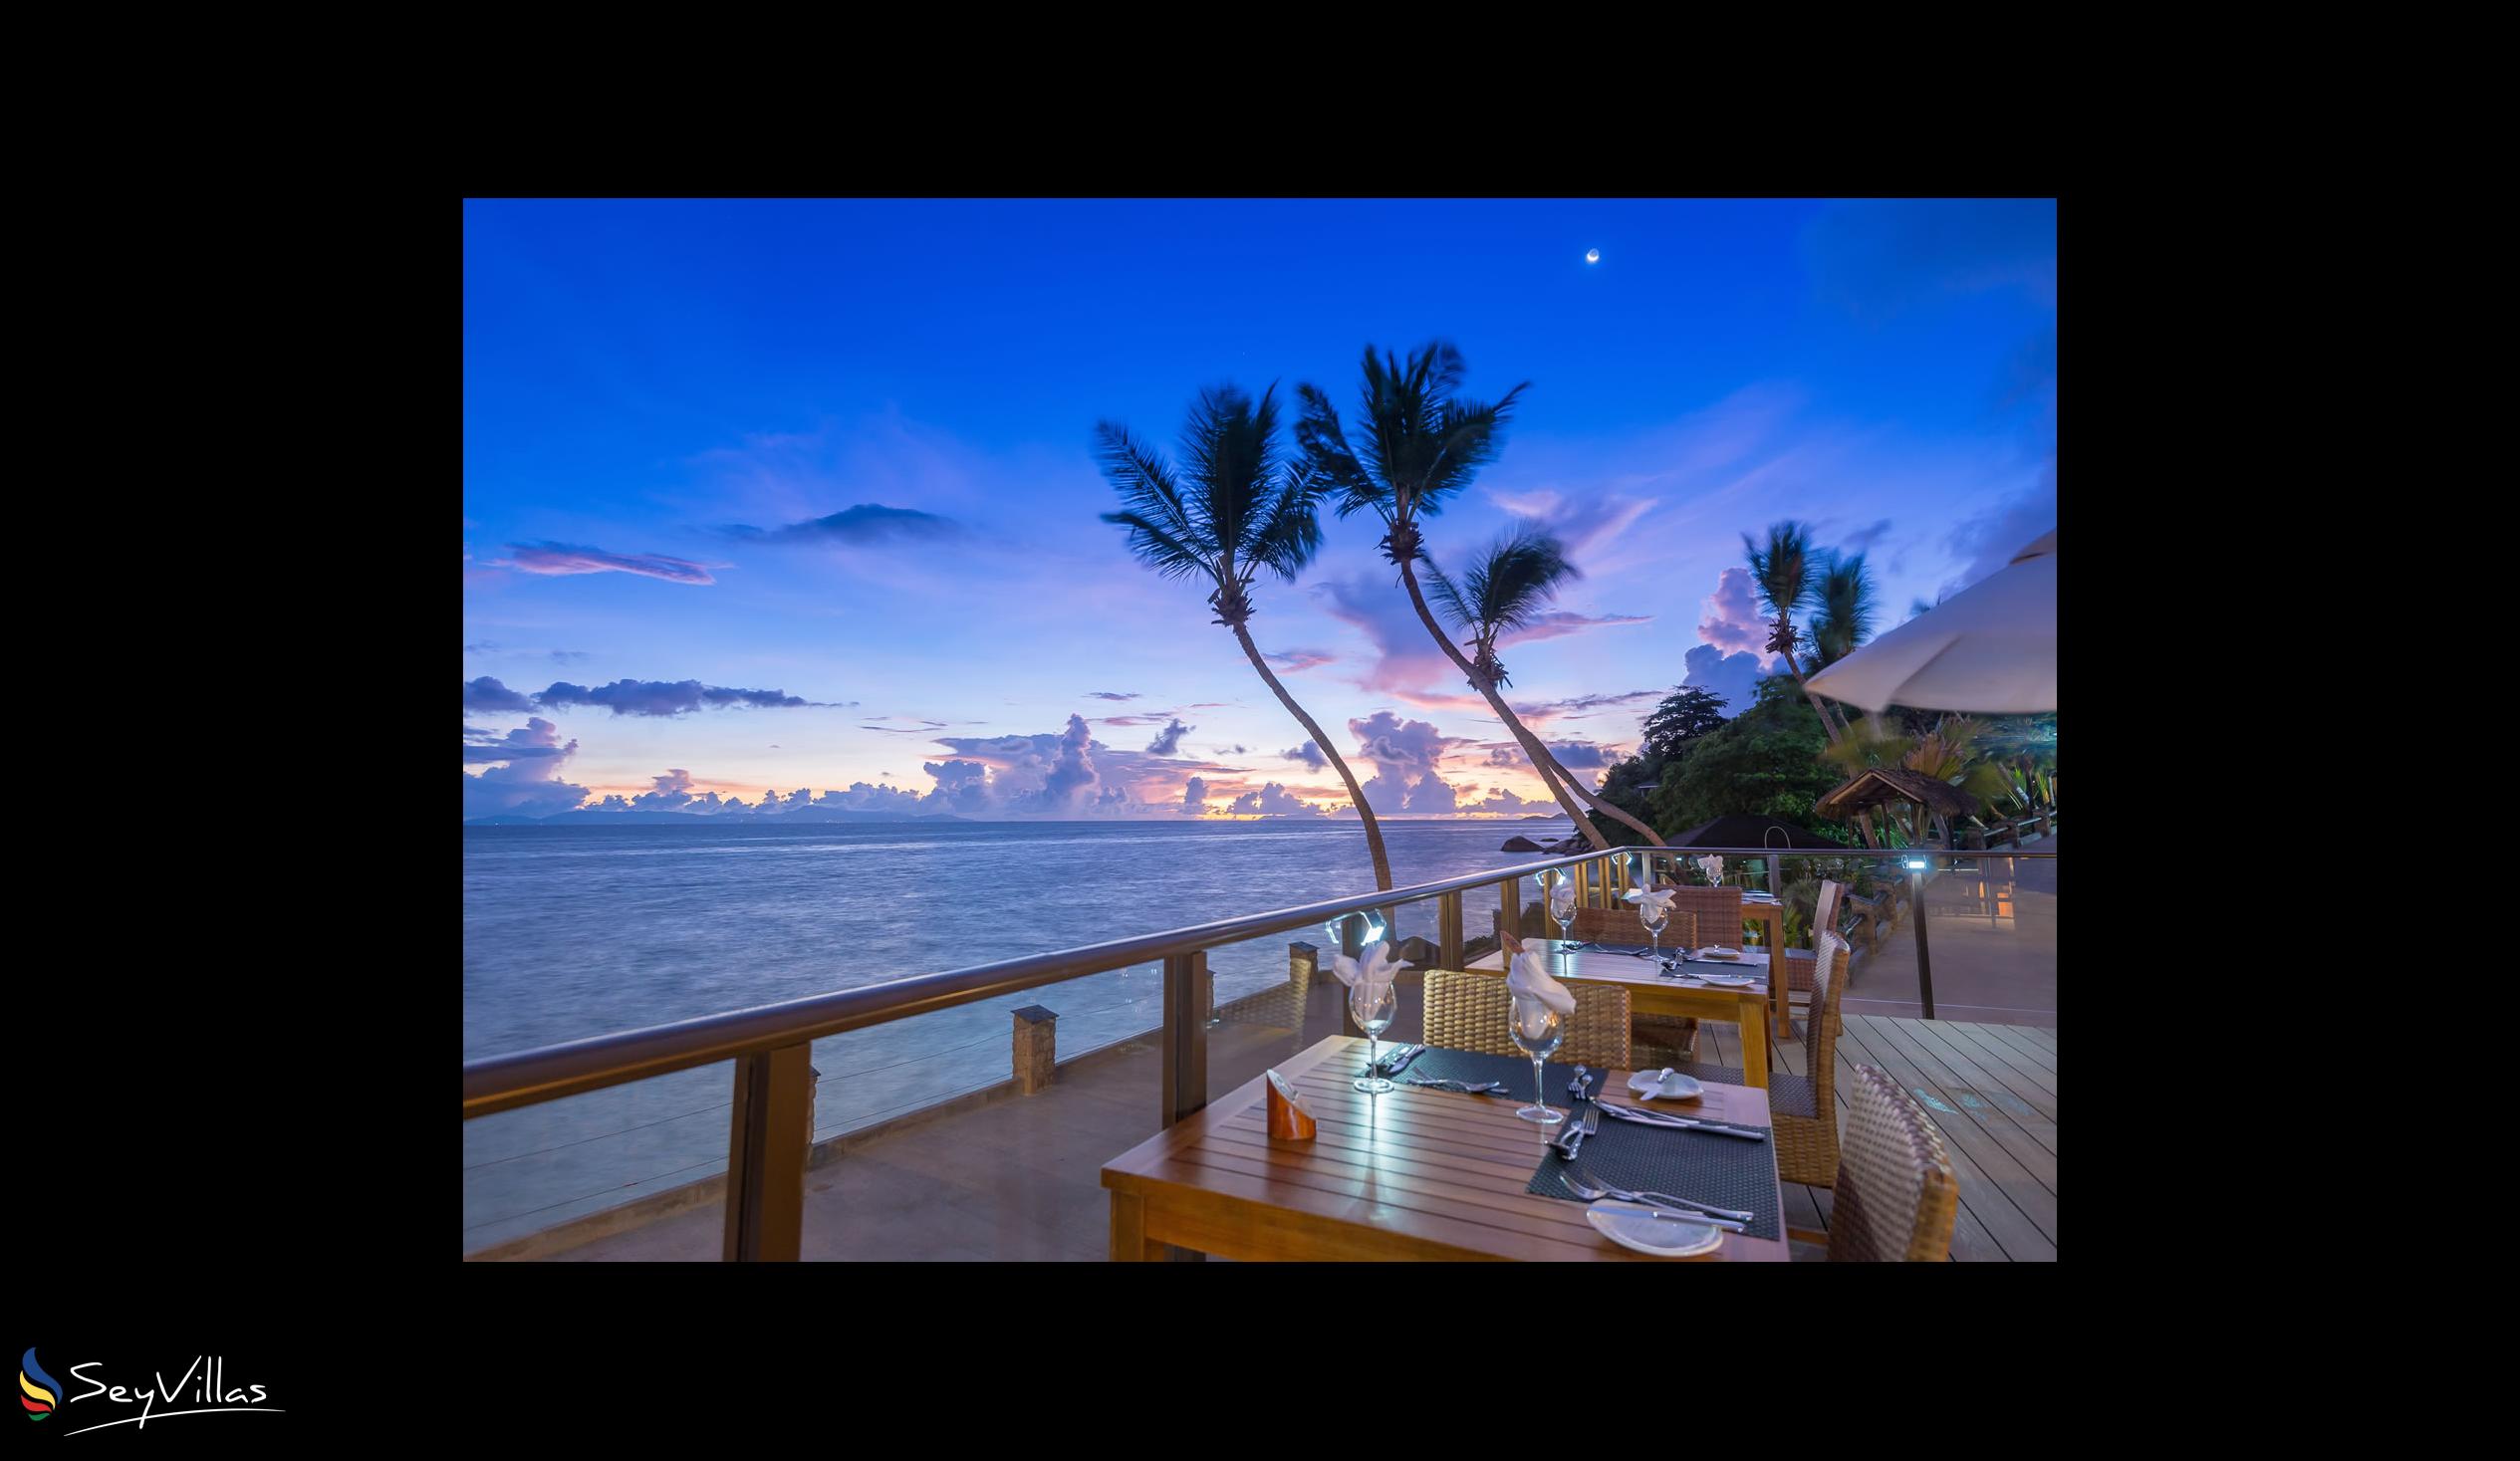 Foto 25: Coco de Mer & Black Parrot Suites - Aussenbereich - Praslin (Seychellen)